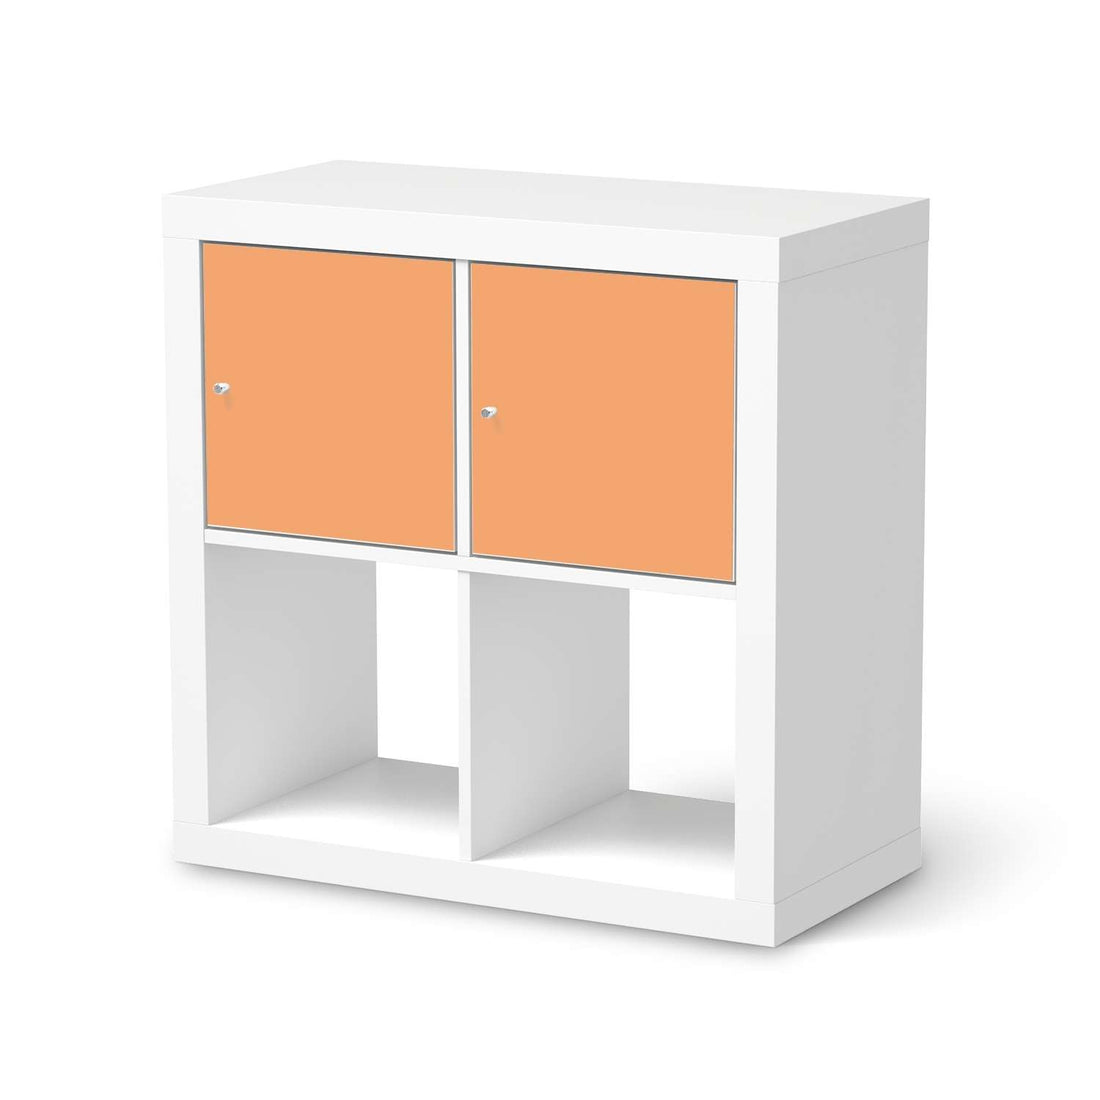 Möbel Klebefolie Orange Light - IKEA Expedit Regal 2 Türen Quer  - weiss